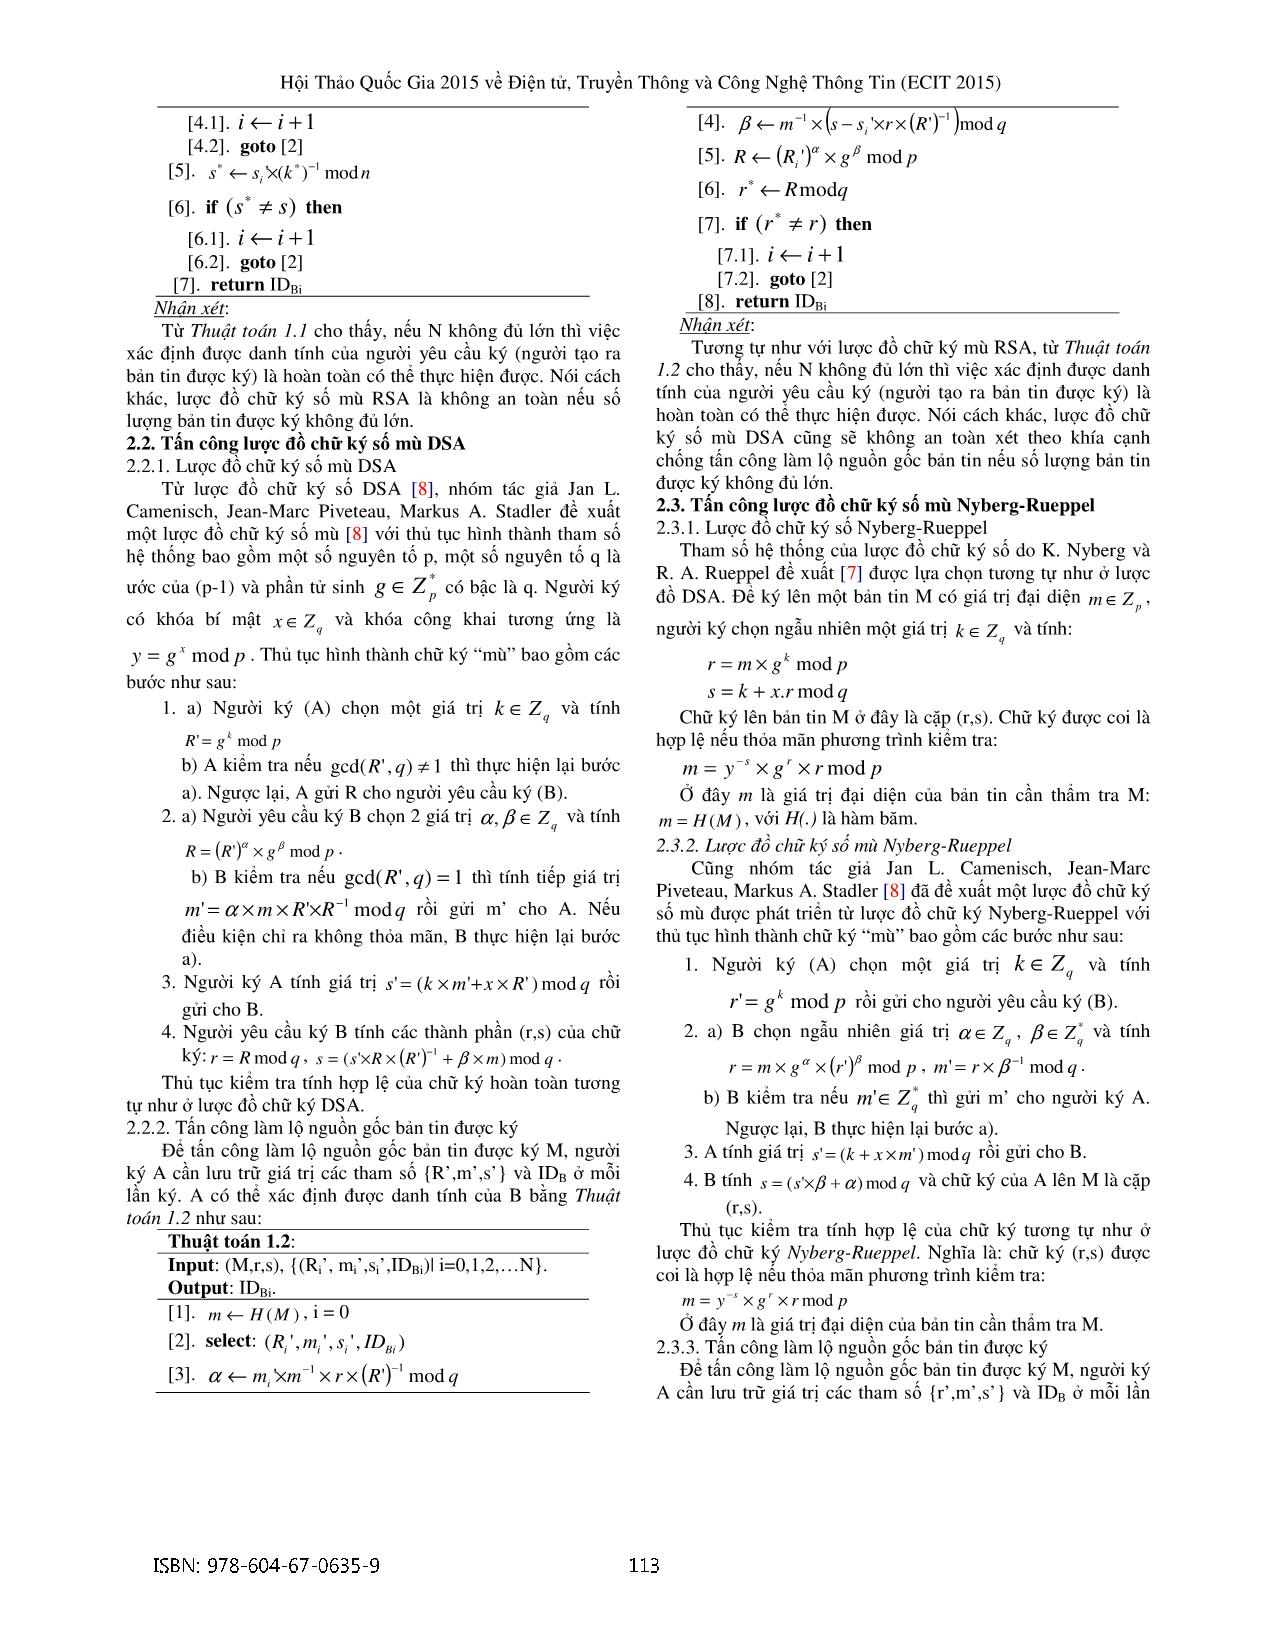 Phát triển lược đồ chữ ký số mù trang 2